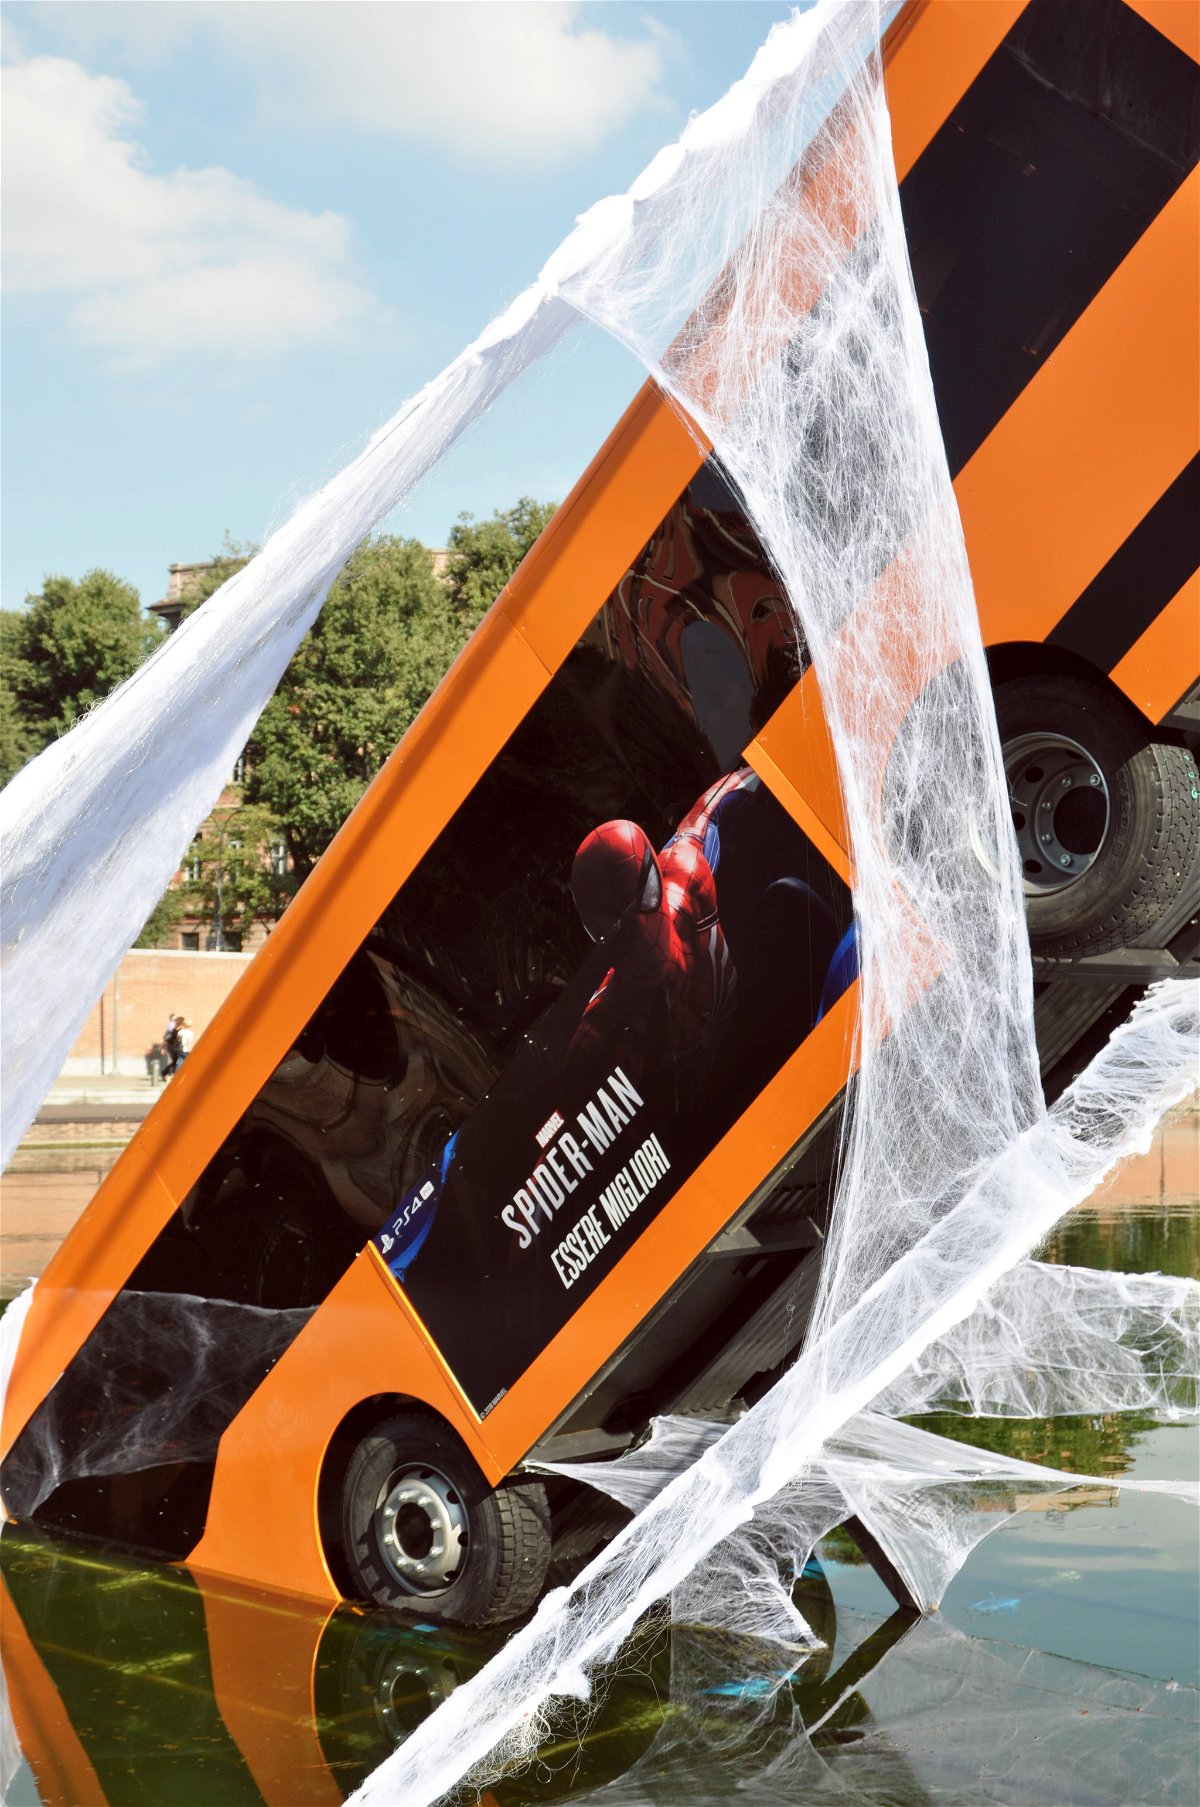 L'autobus salvato da Spider-Man a Milano